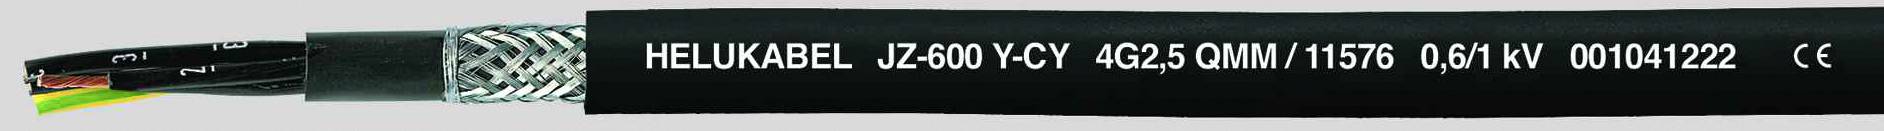 HELUKABEL JZ-600-Y-CY Steuerleitung 18 G 0.75 mm² Schwarz 11501-500 500 m